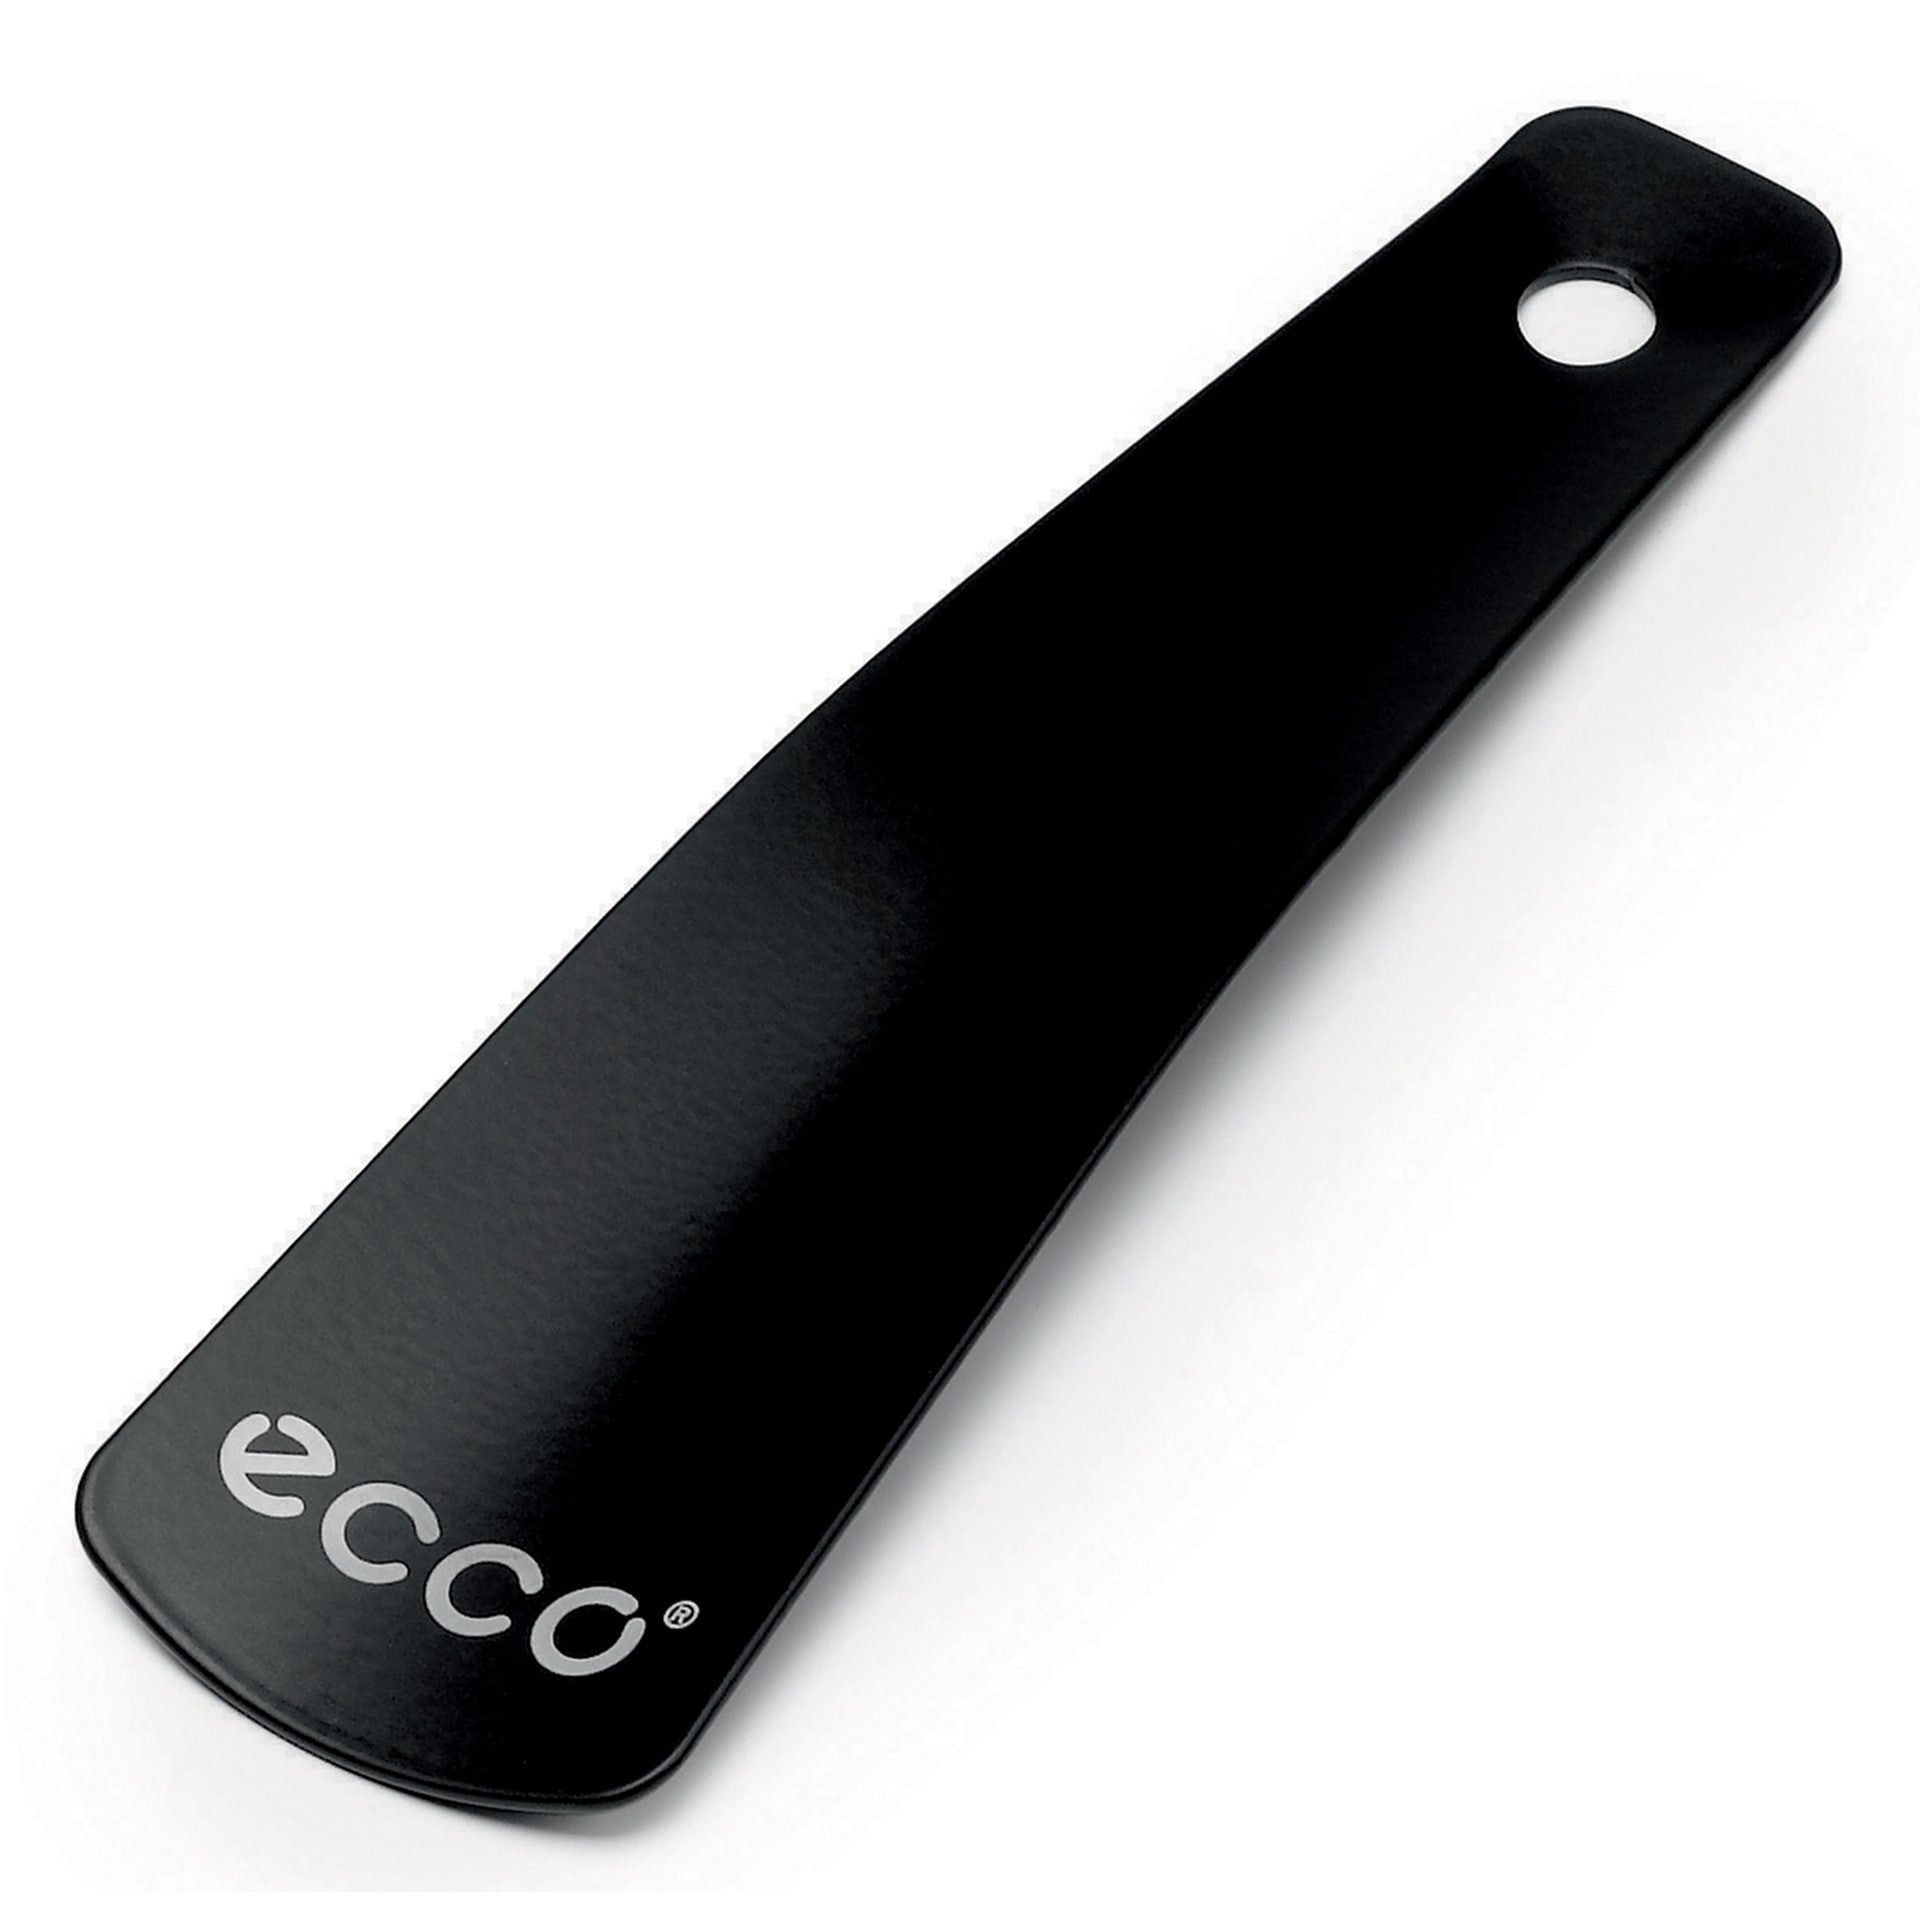 'ECCO' Metal Shoehorn